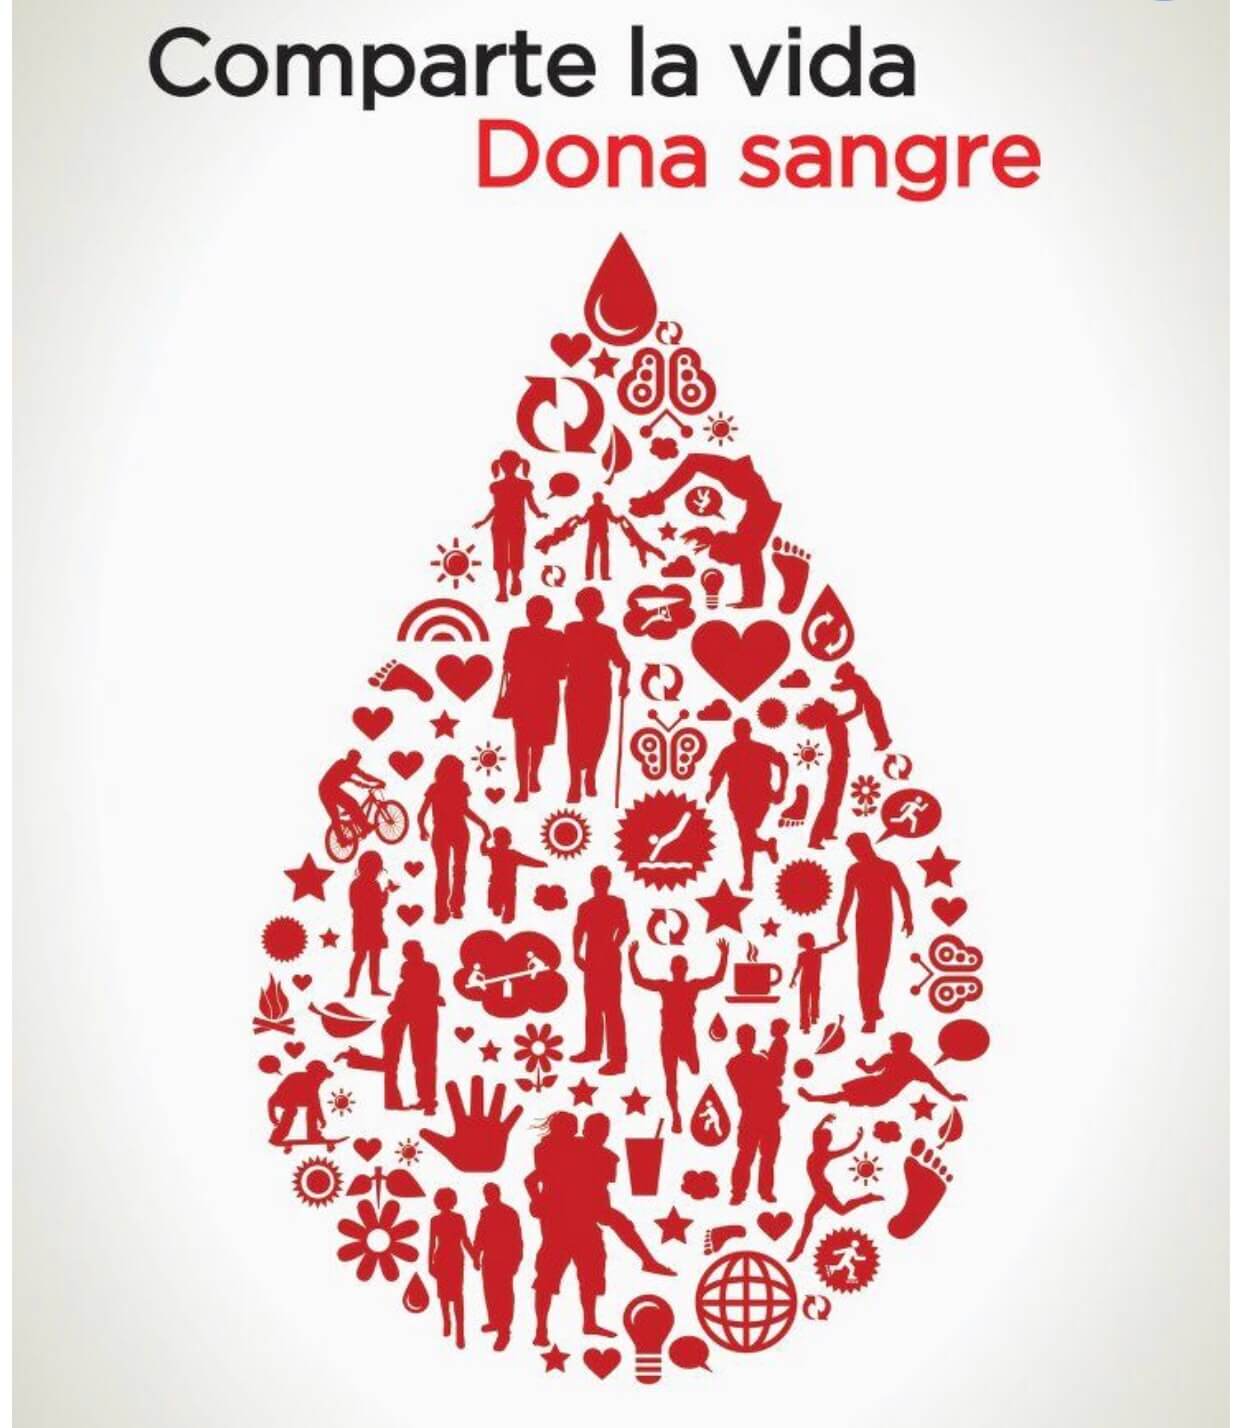 Mañana, Campaña de donación de sangre en el Chare “Dona vida”